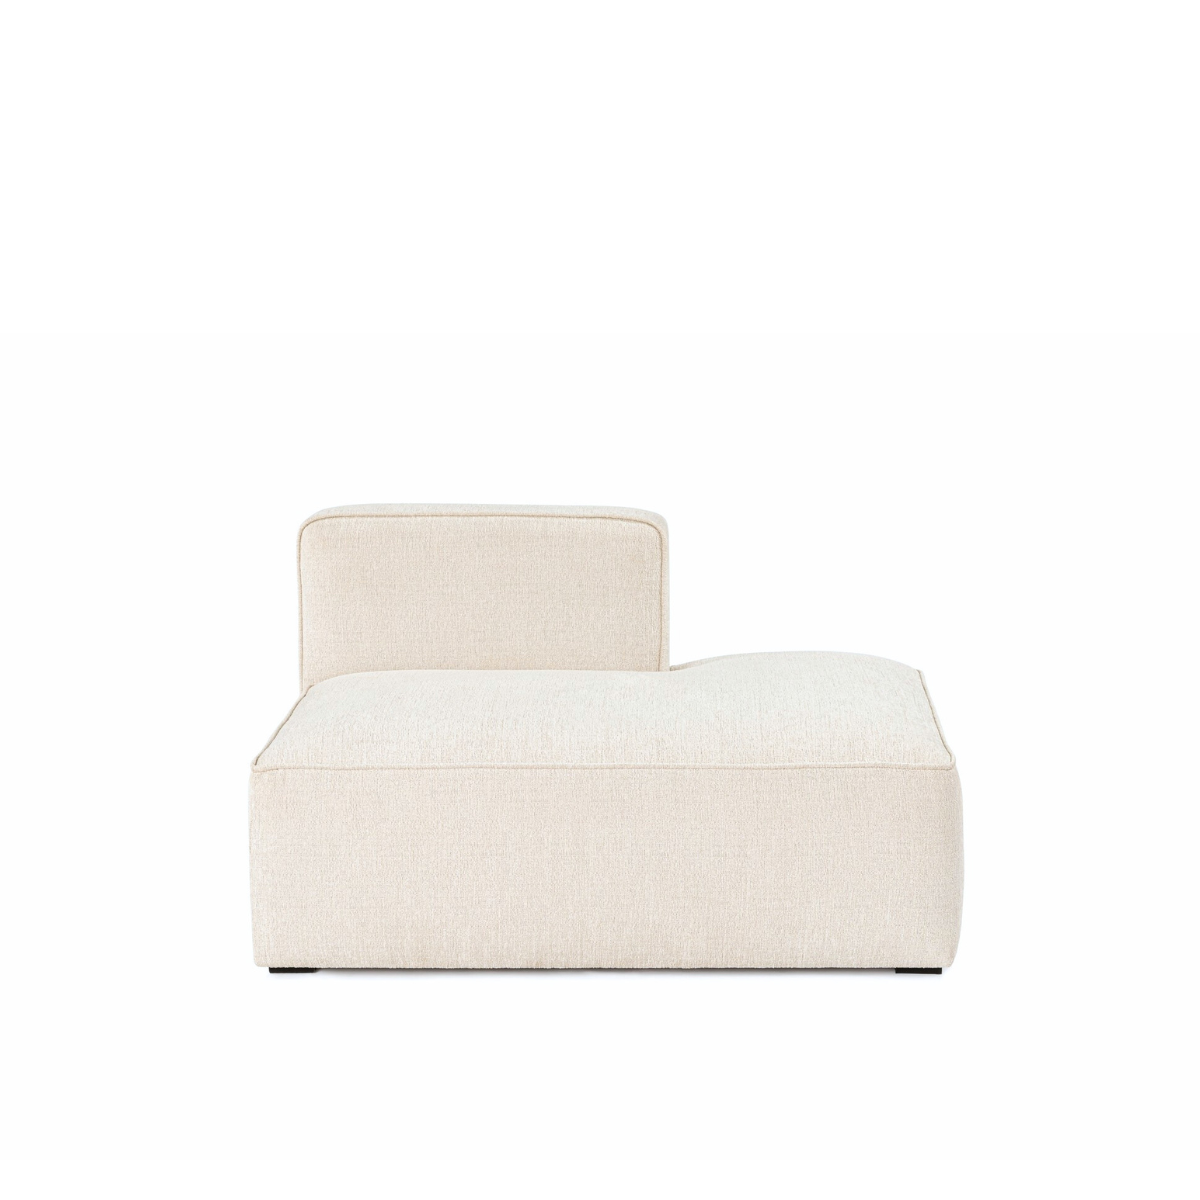 MATT Design | More sofa - open end modul